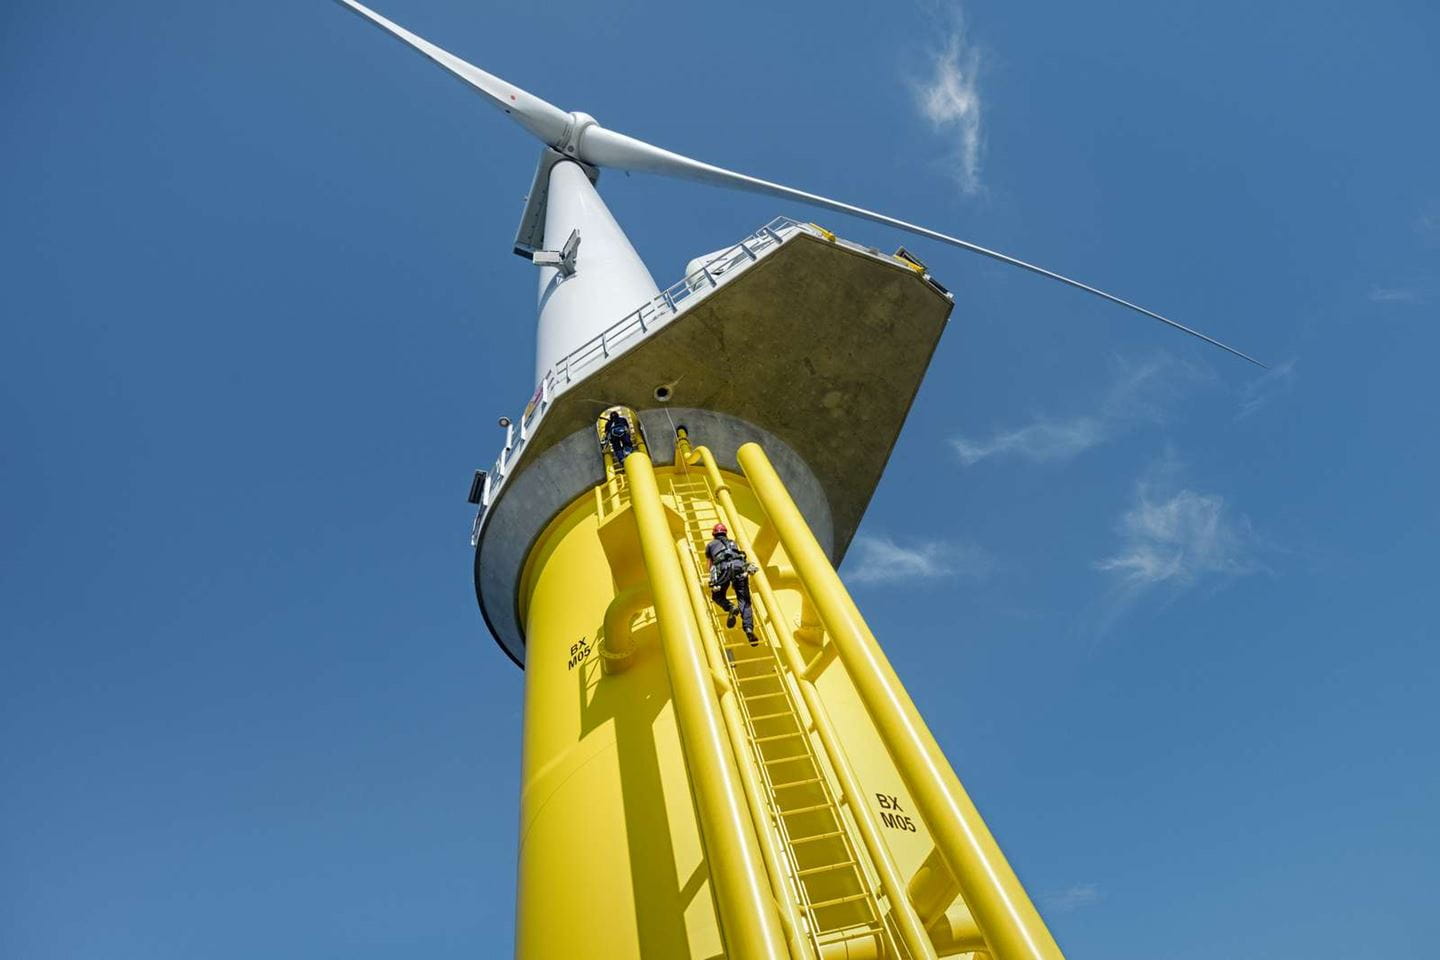 Technician climbing a ladder on an offshore wind turbine